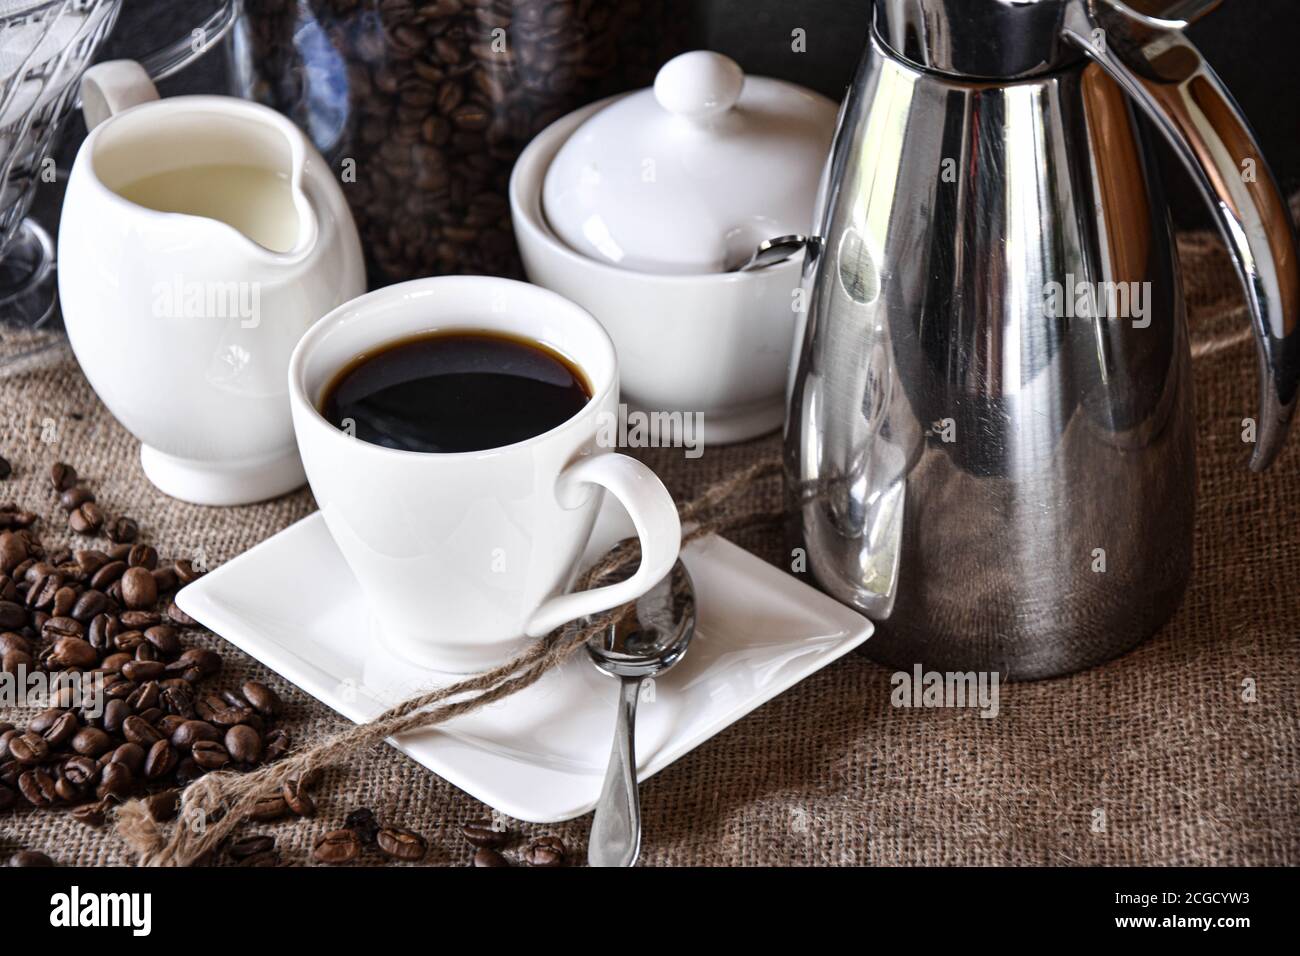 une tasse de café avec des plats blancs, un pot à lait et une sucrière  servis sur une texture jute avec une cafetière thermos argentée Photo Stock  - Alamy